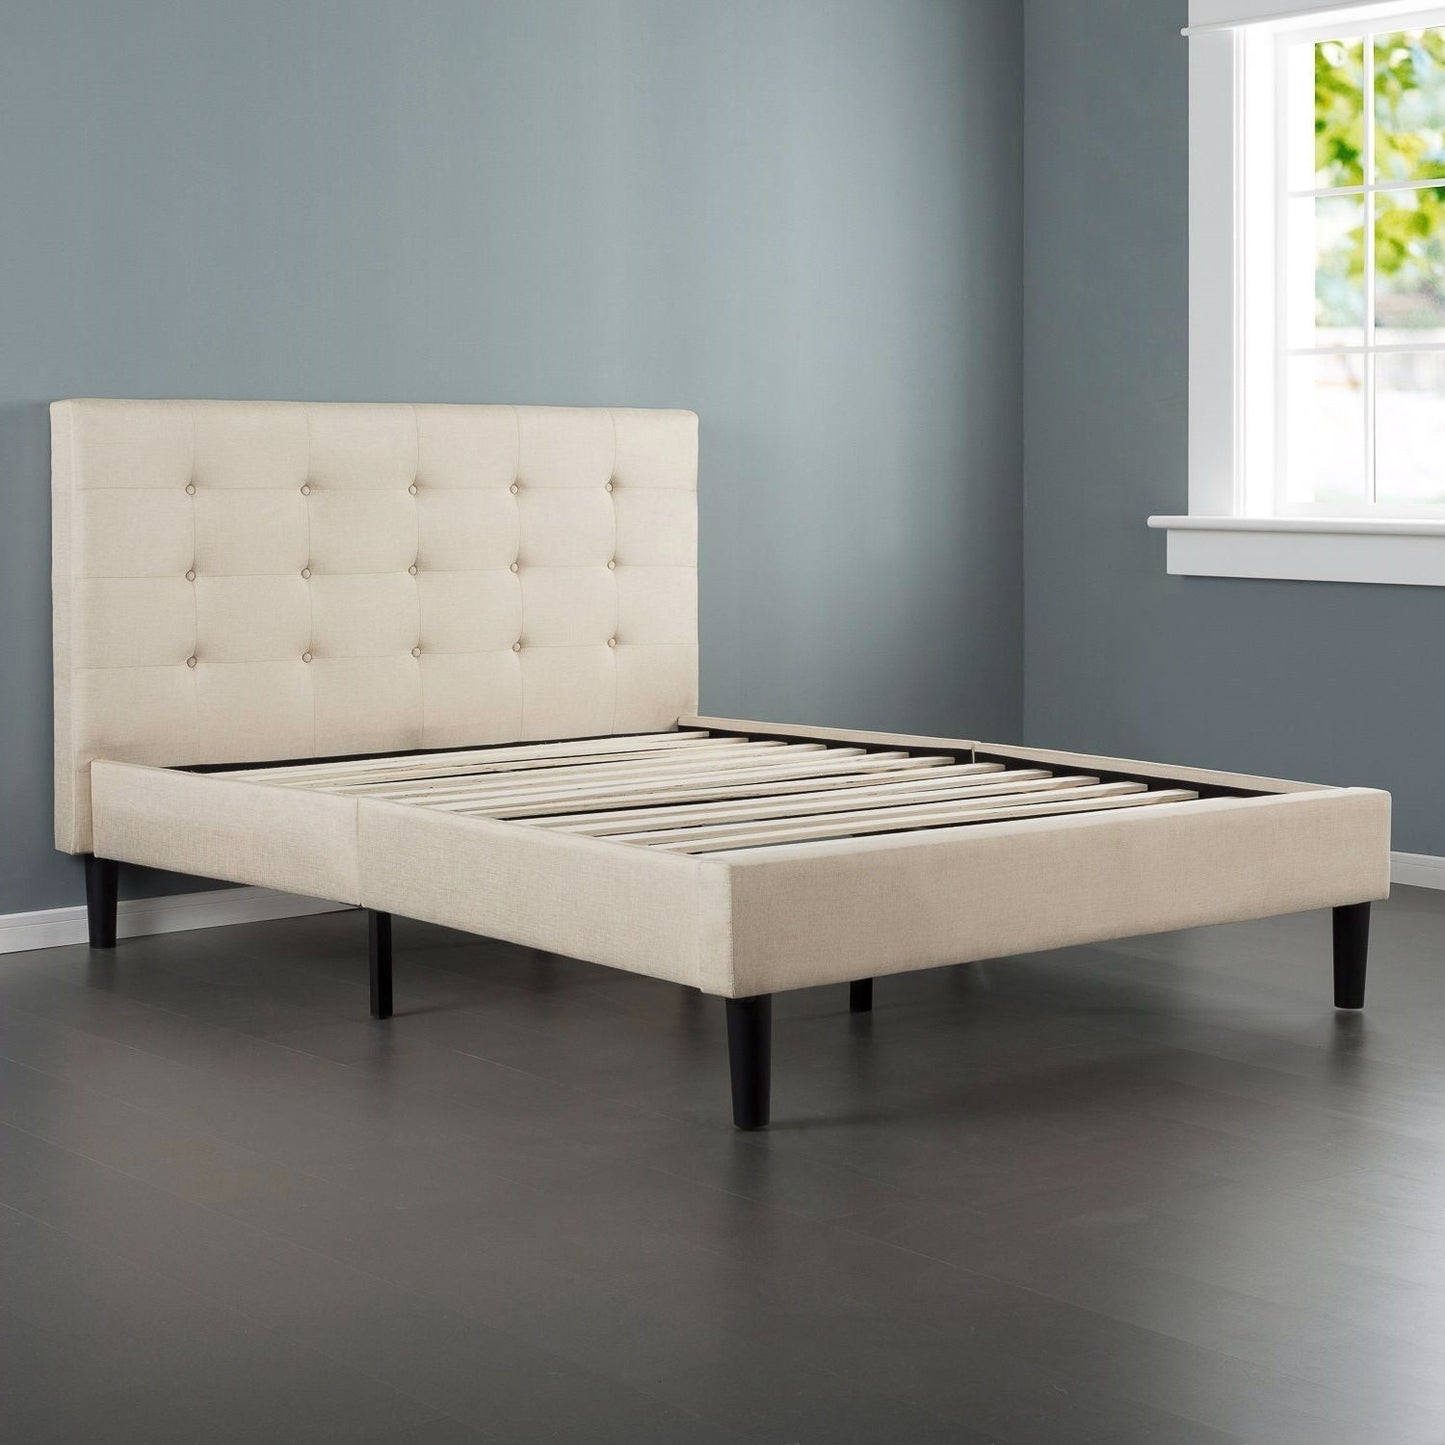 Bedroom > Bed Frames > Platform Beds - Full Size Platform Bed Frame With Taupe Button Tufted Upholstered Headboard